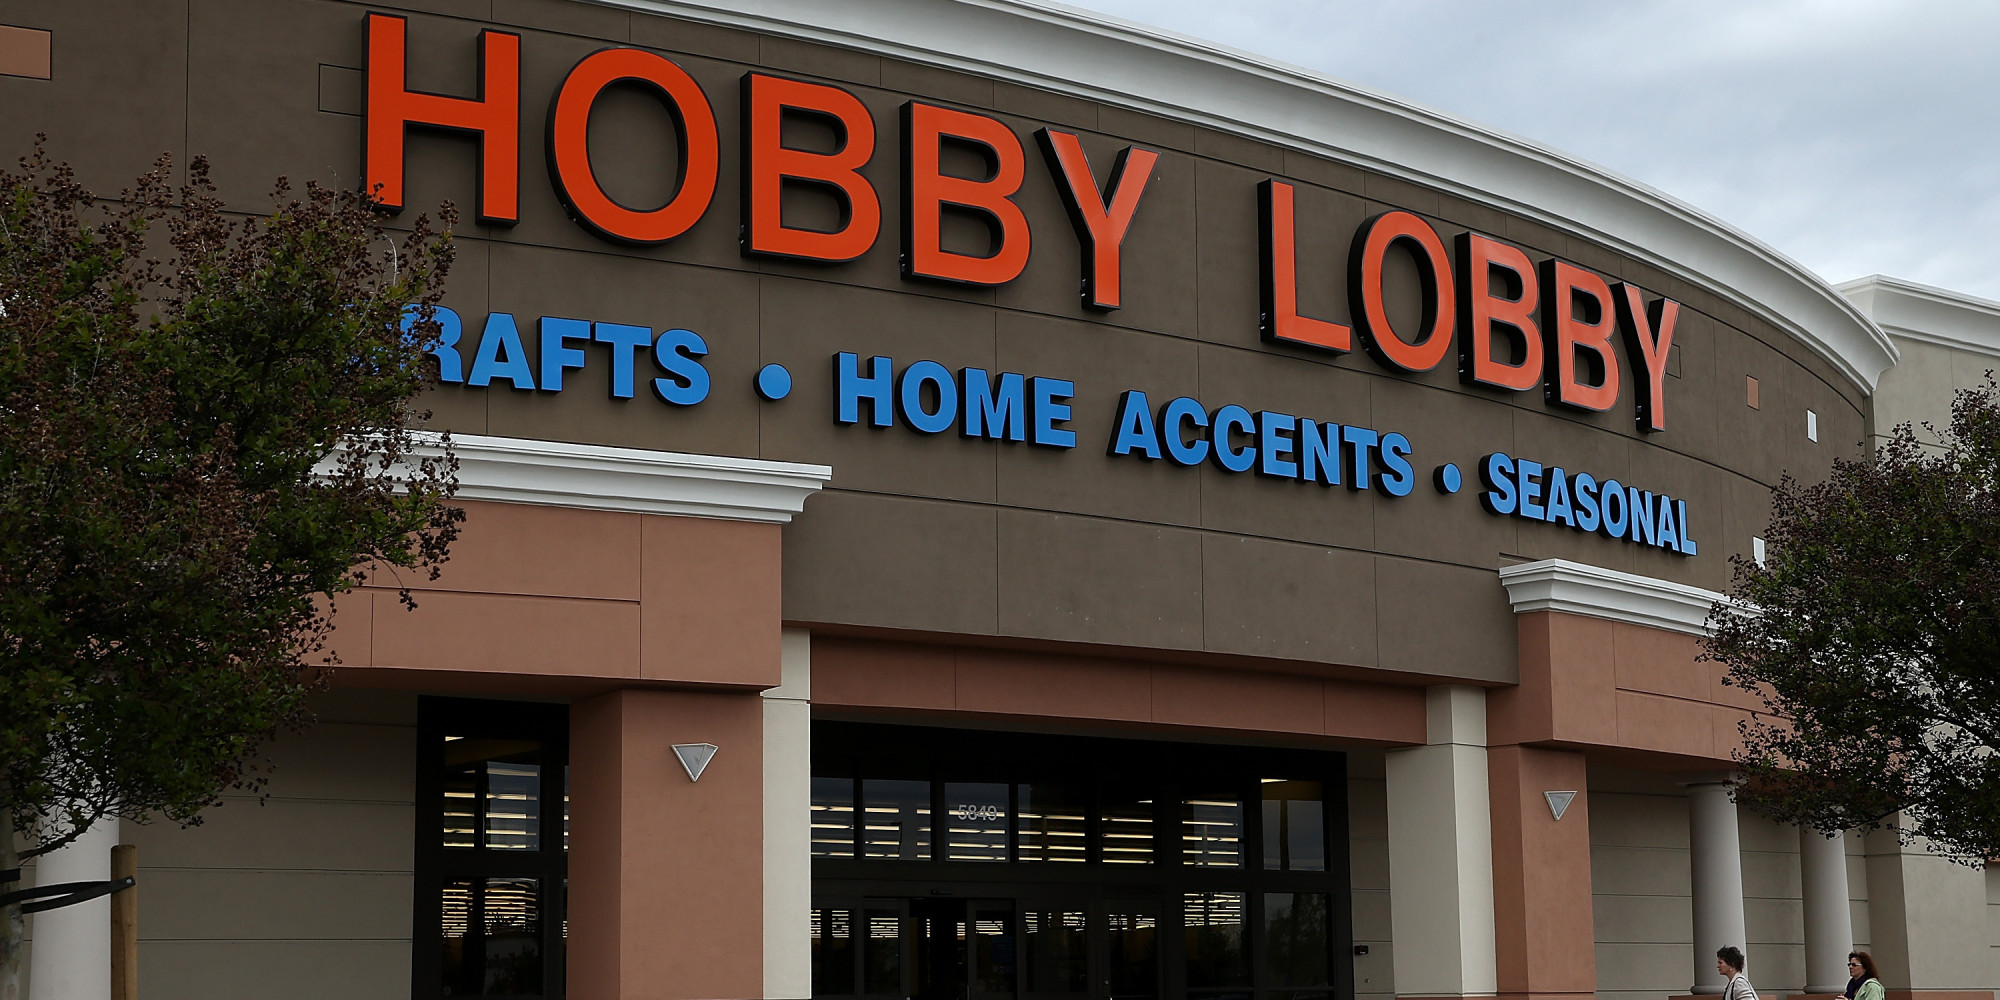 hooby lobby